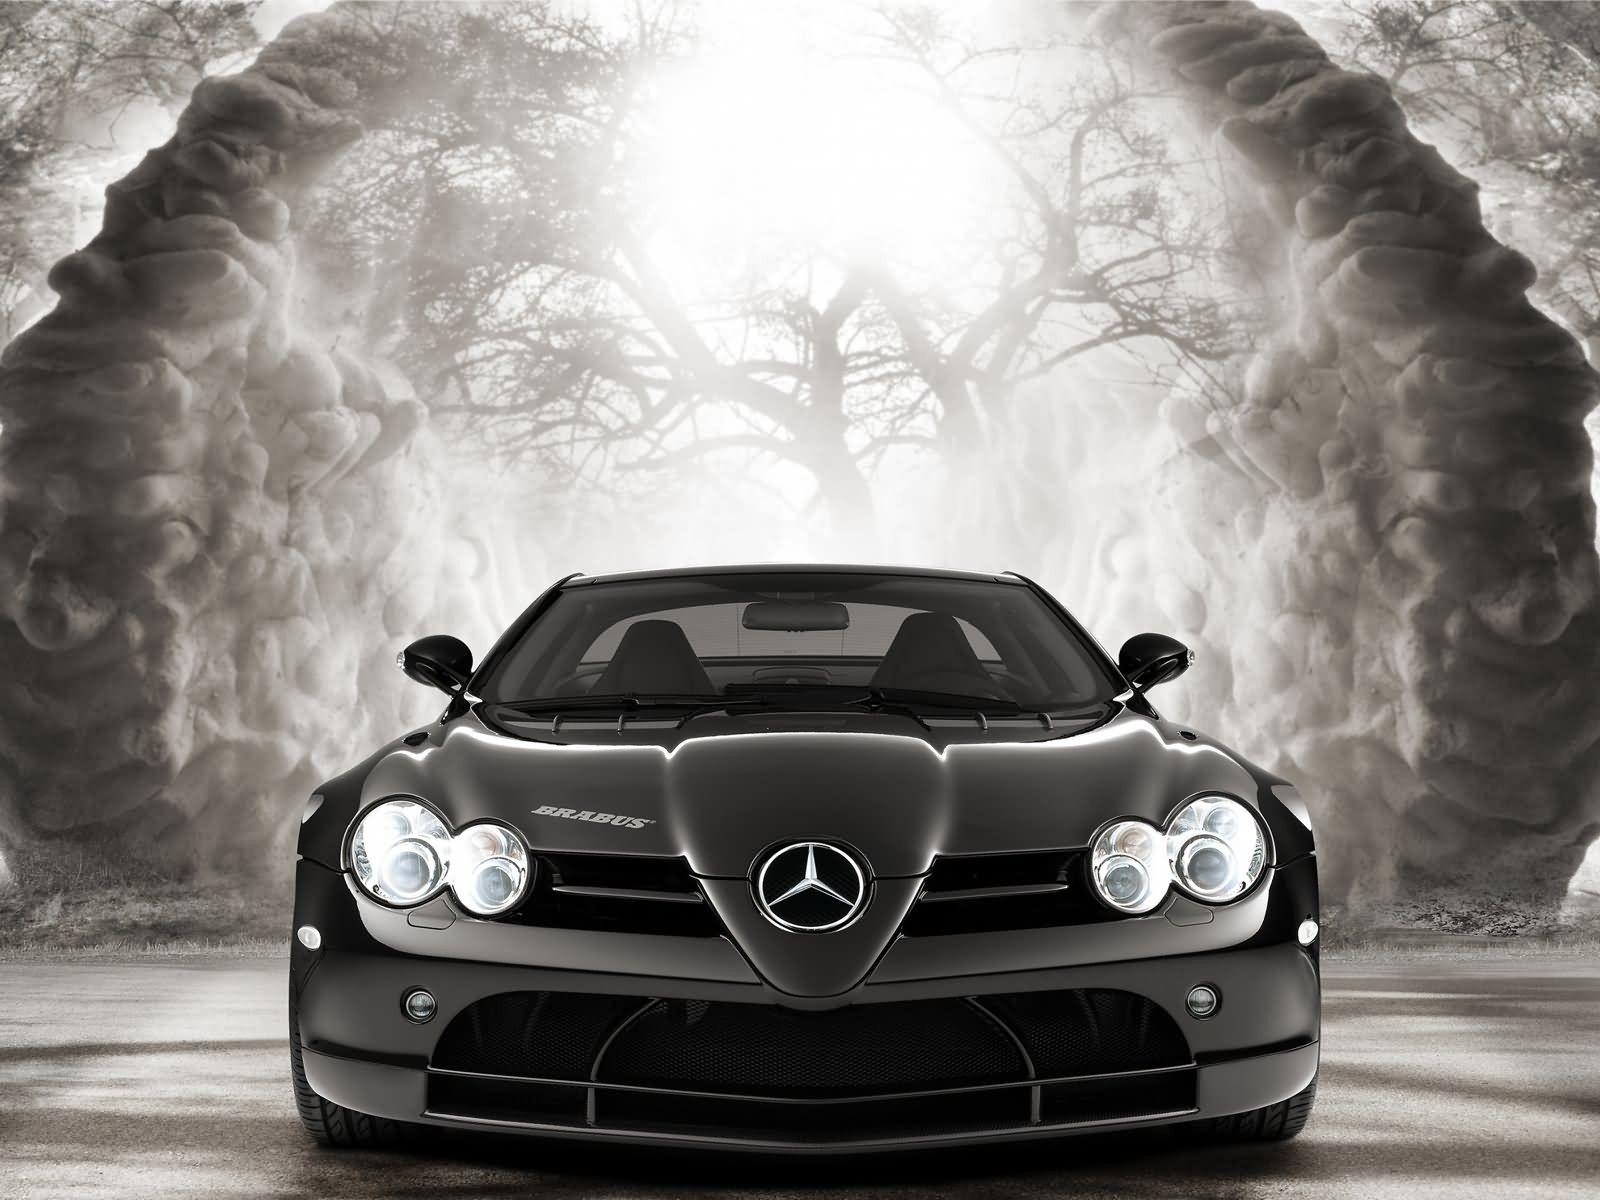 Mercedes Benz HD Wallpaper Free Download